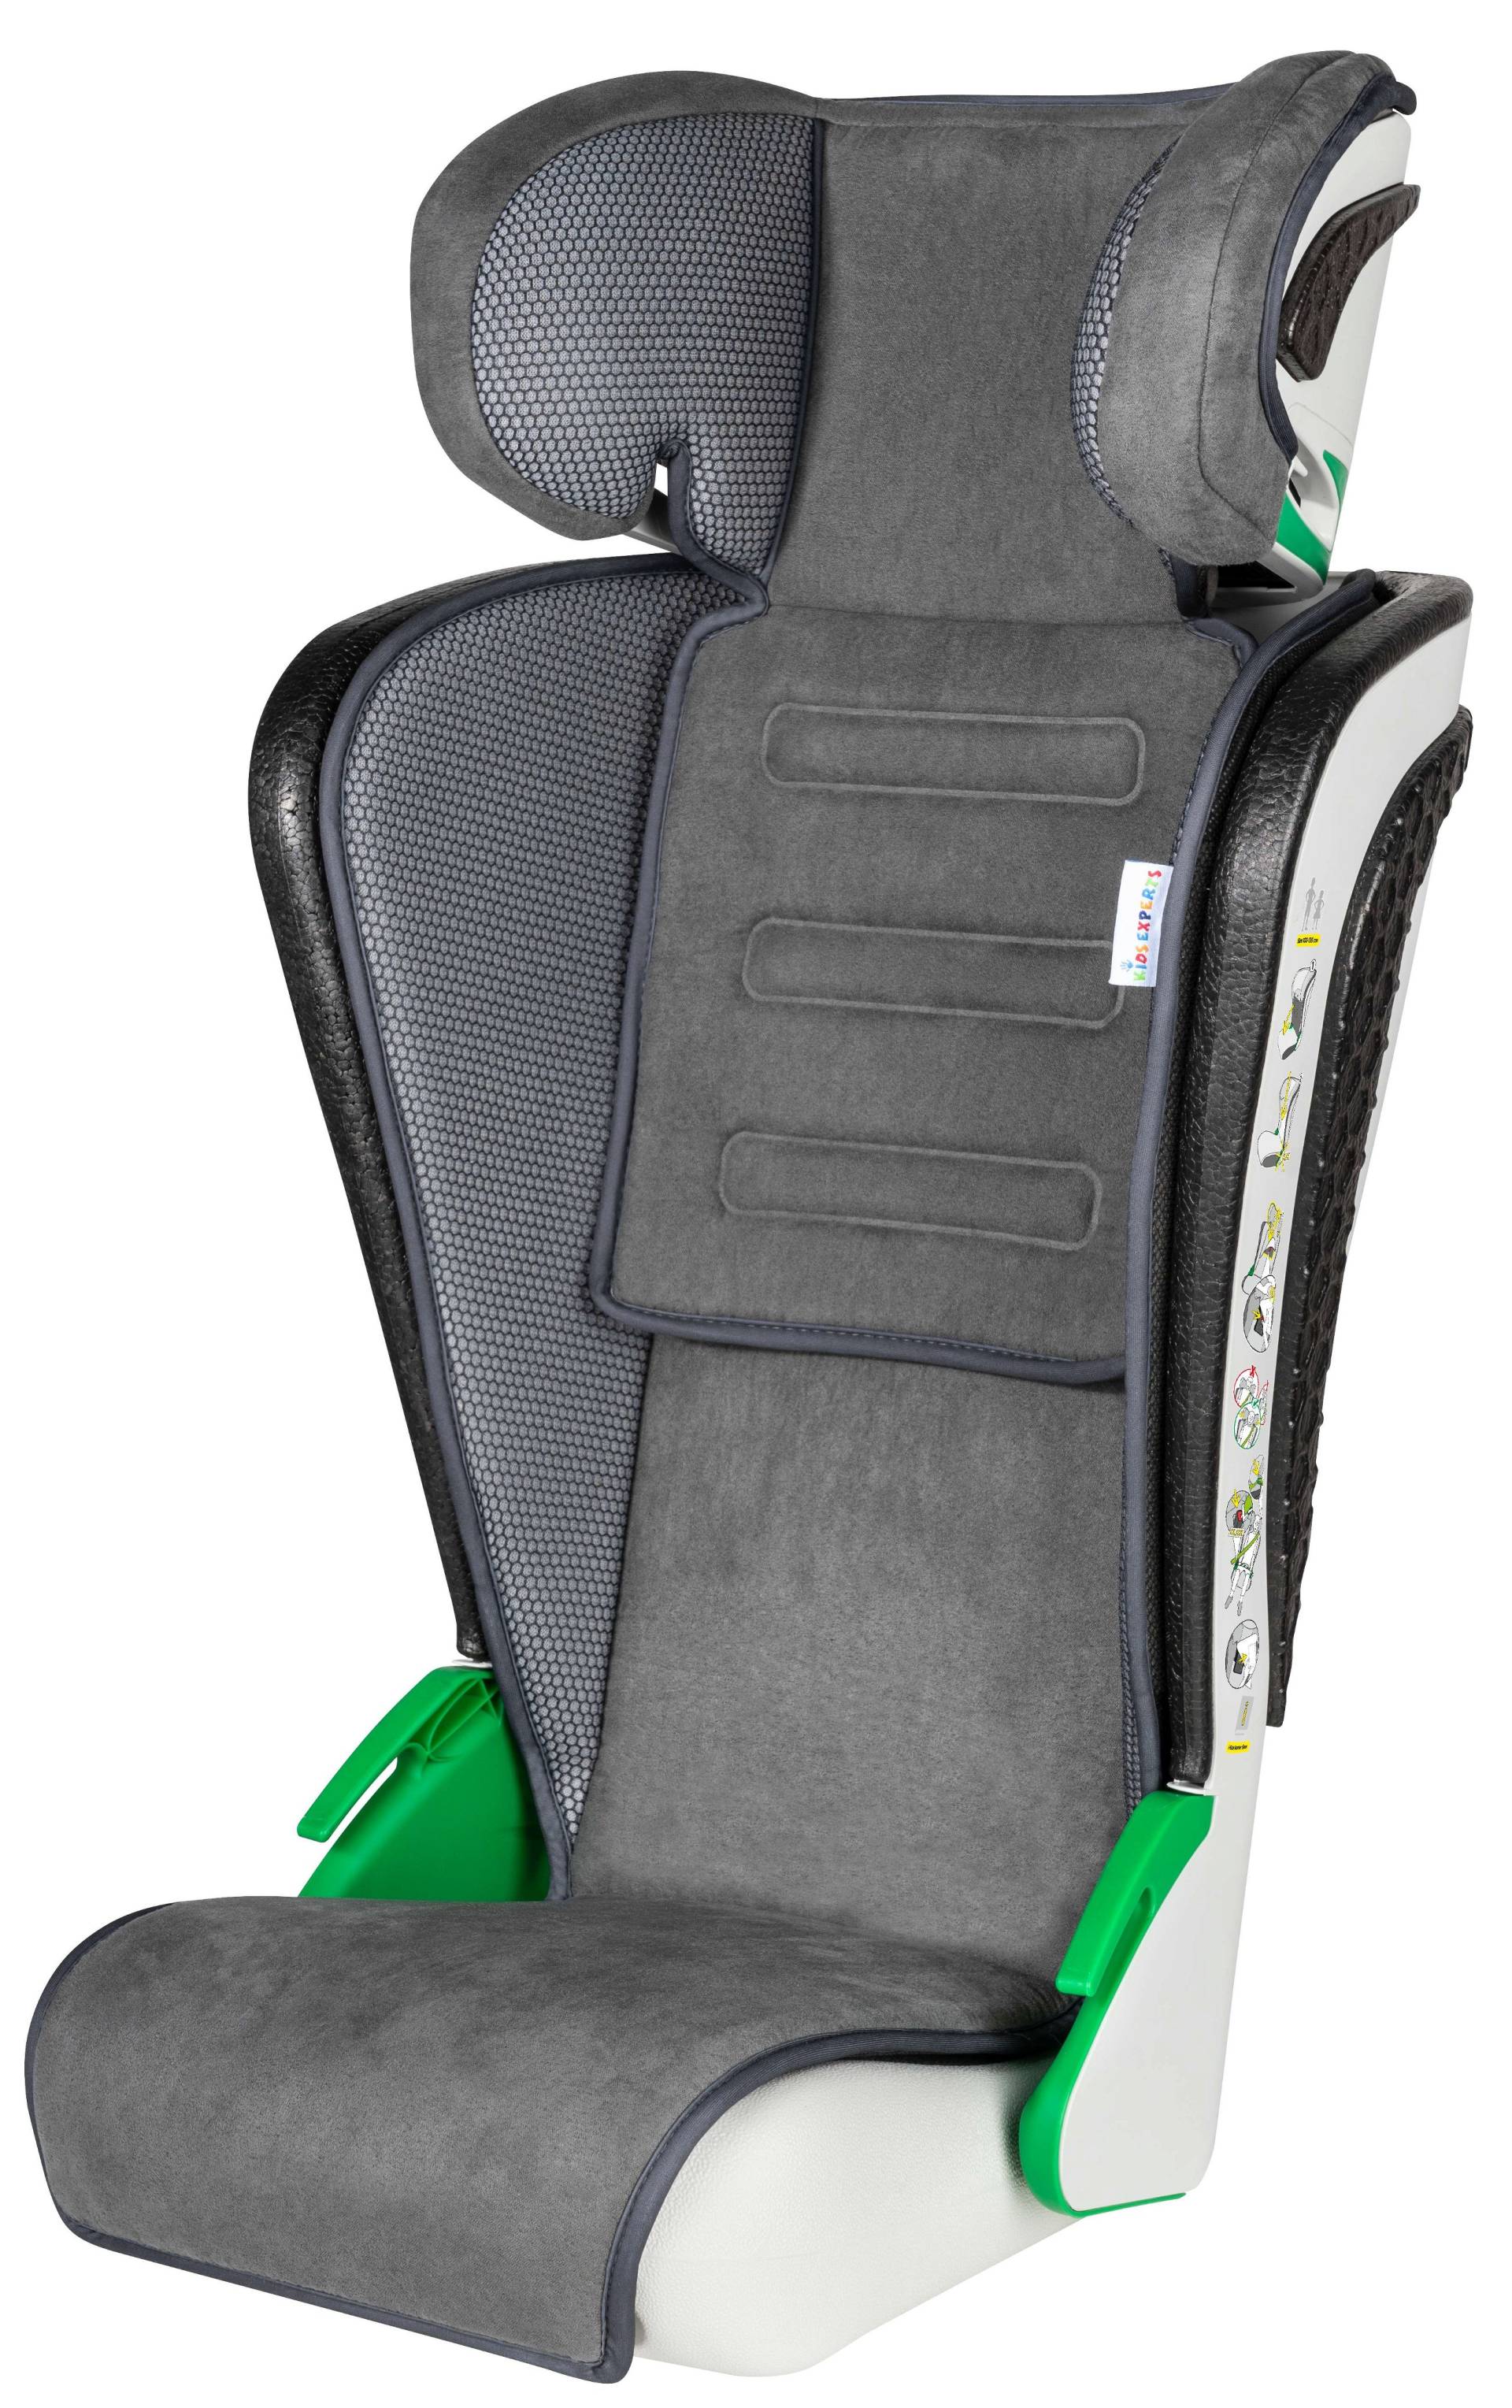 Kindersitz Noemi, klappbarer Auto-Kindersitz ECE R129 geprüft Anthrazit von WALSER